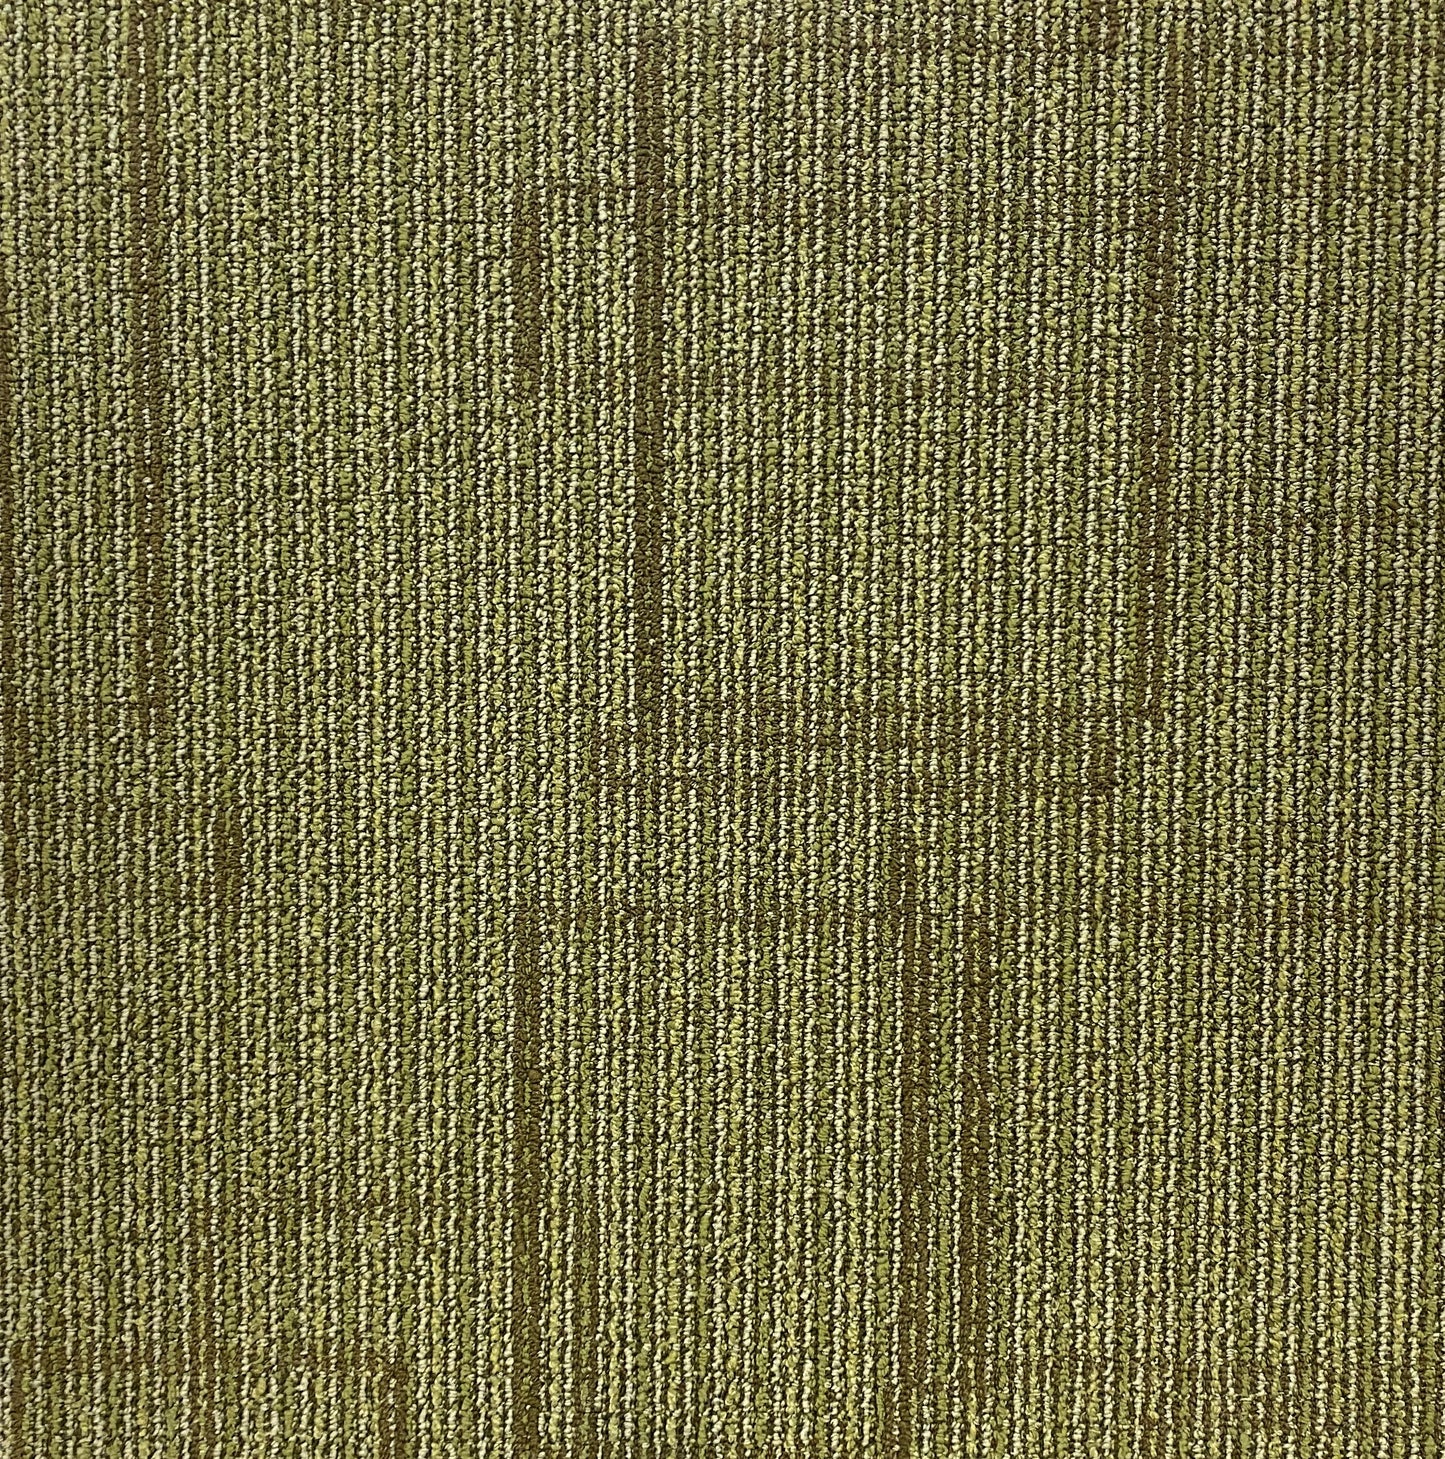 Shaw Green Space Carpet Tile-24"x 24"(12 Tiles/case, 48 sq. ft./case)